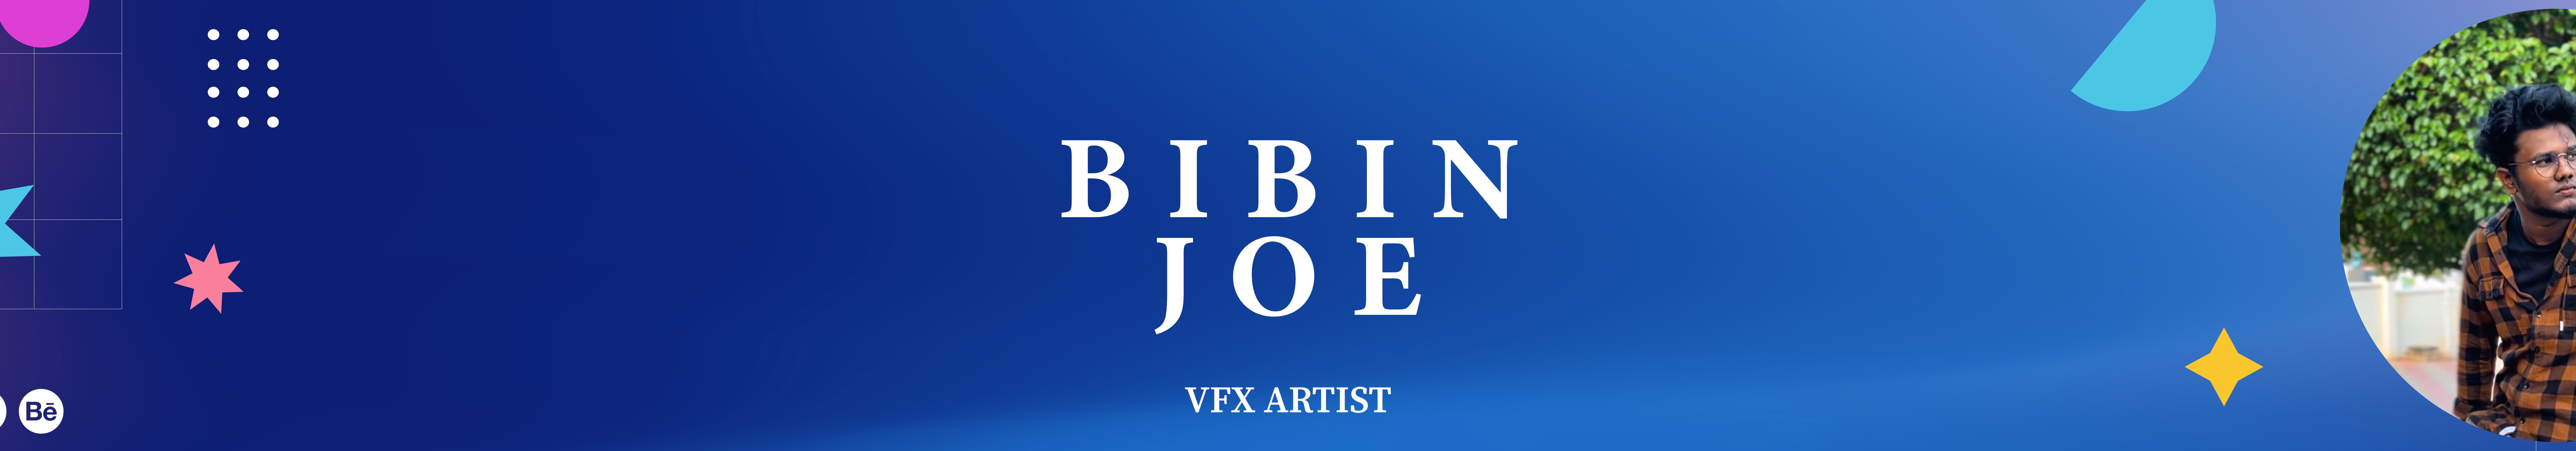 Bibin Joe's profile banner